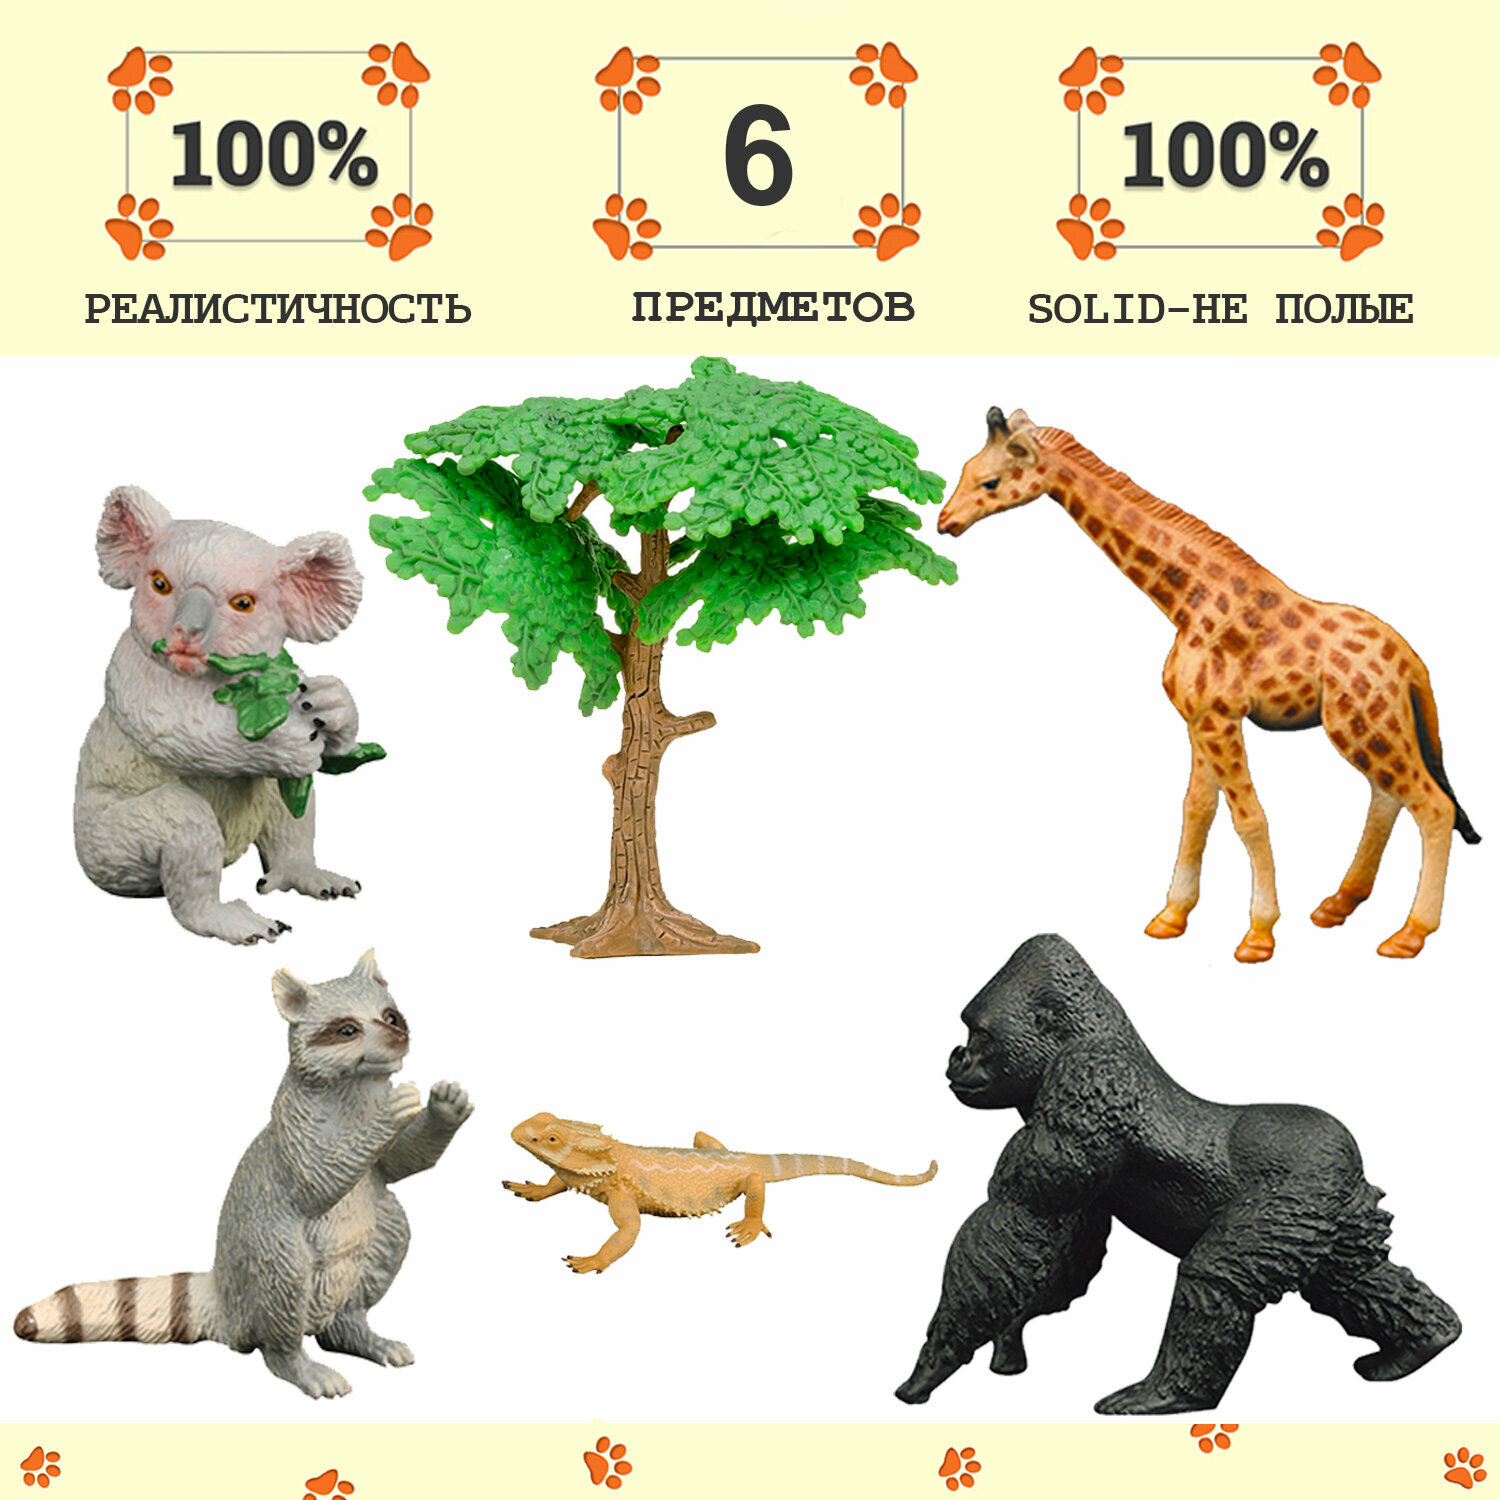 Набор фигурок животных серии "Мир диких животных": горилла, енот, варан, коала, жираф (набор из 6 предметов)